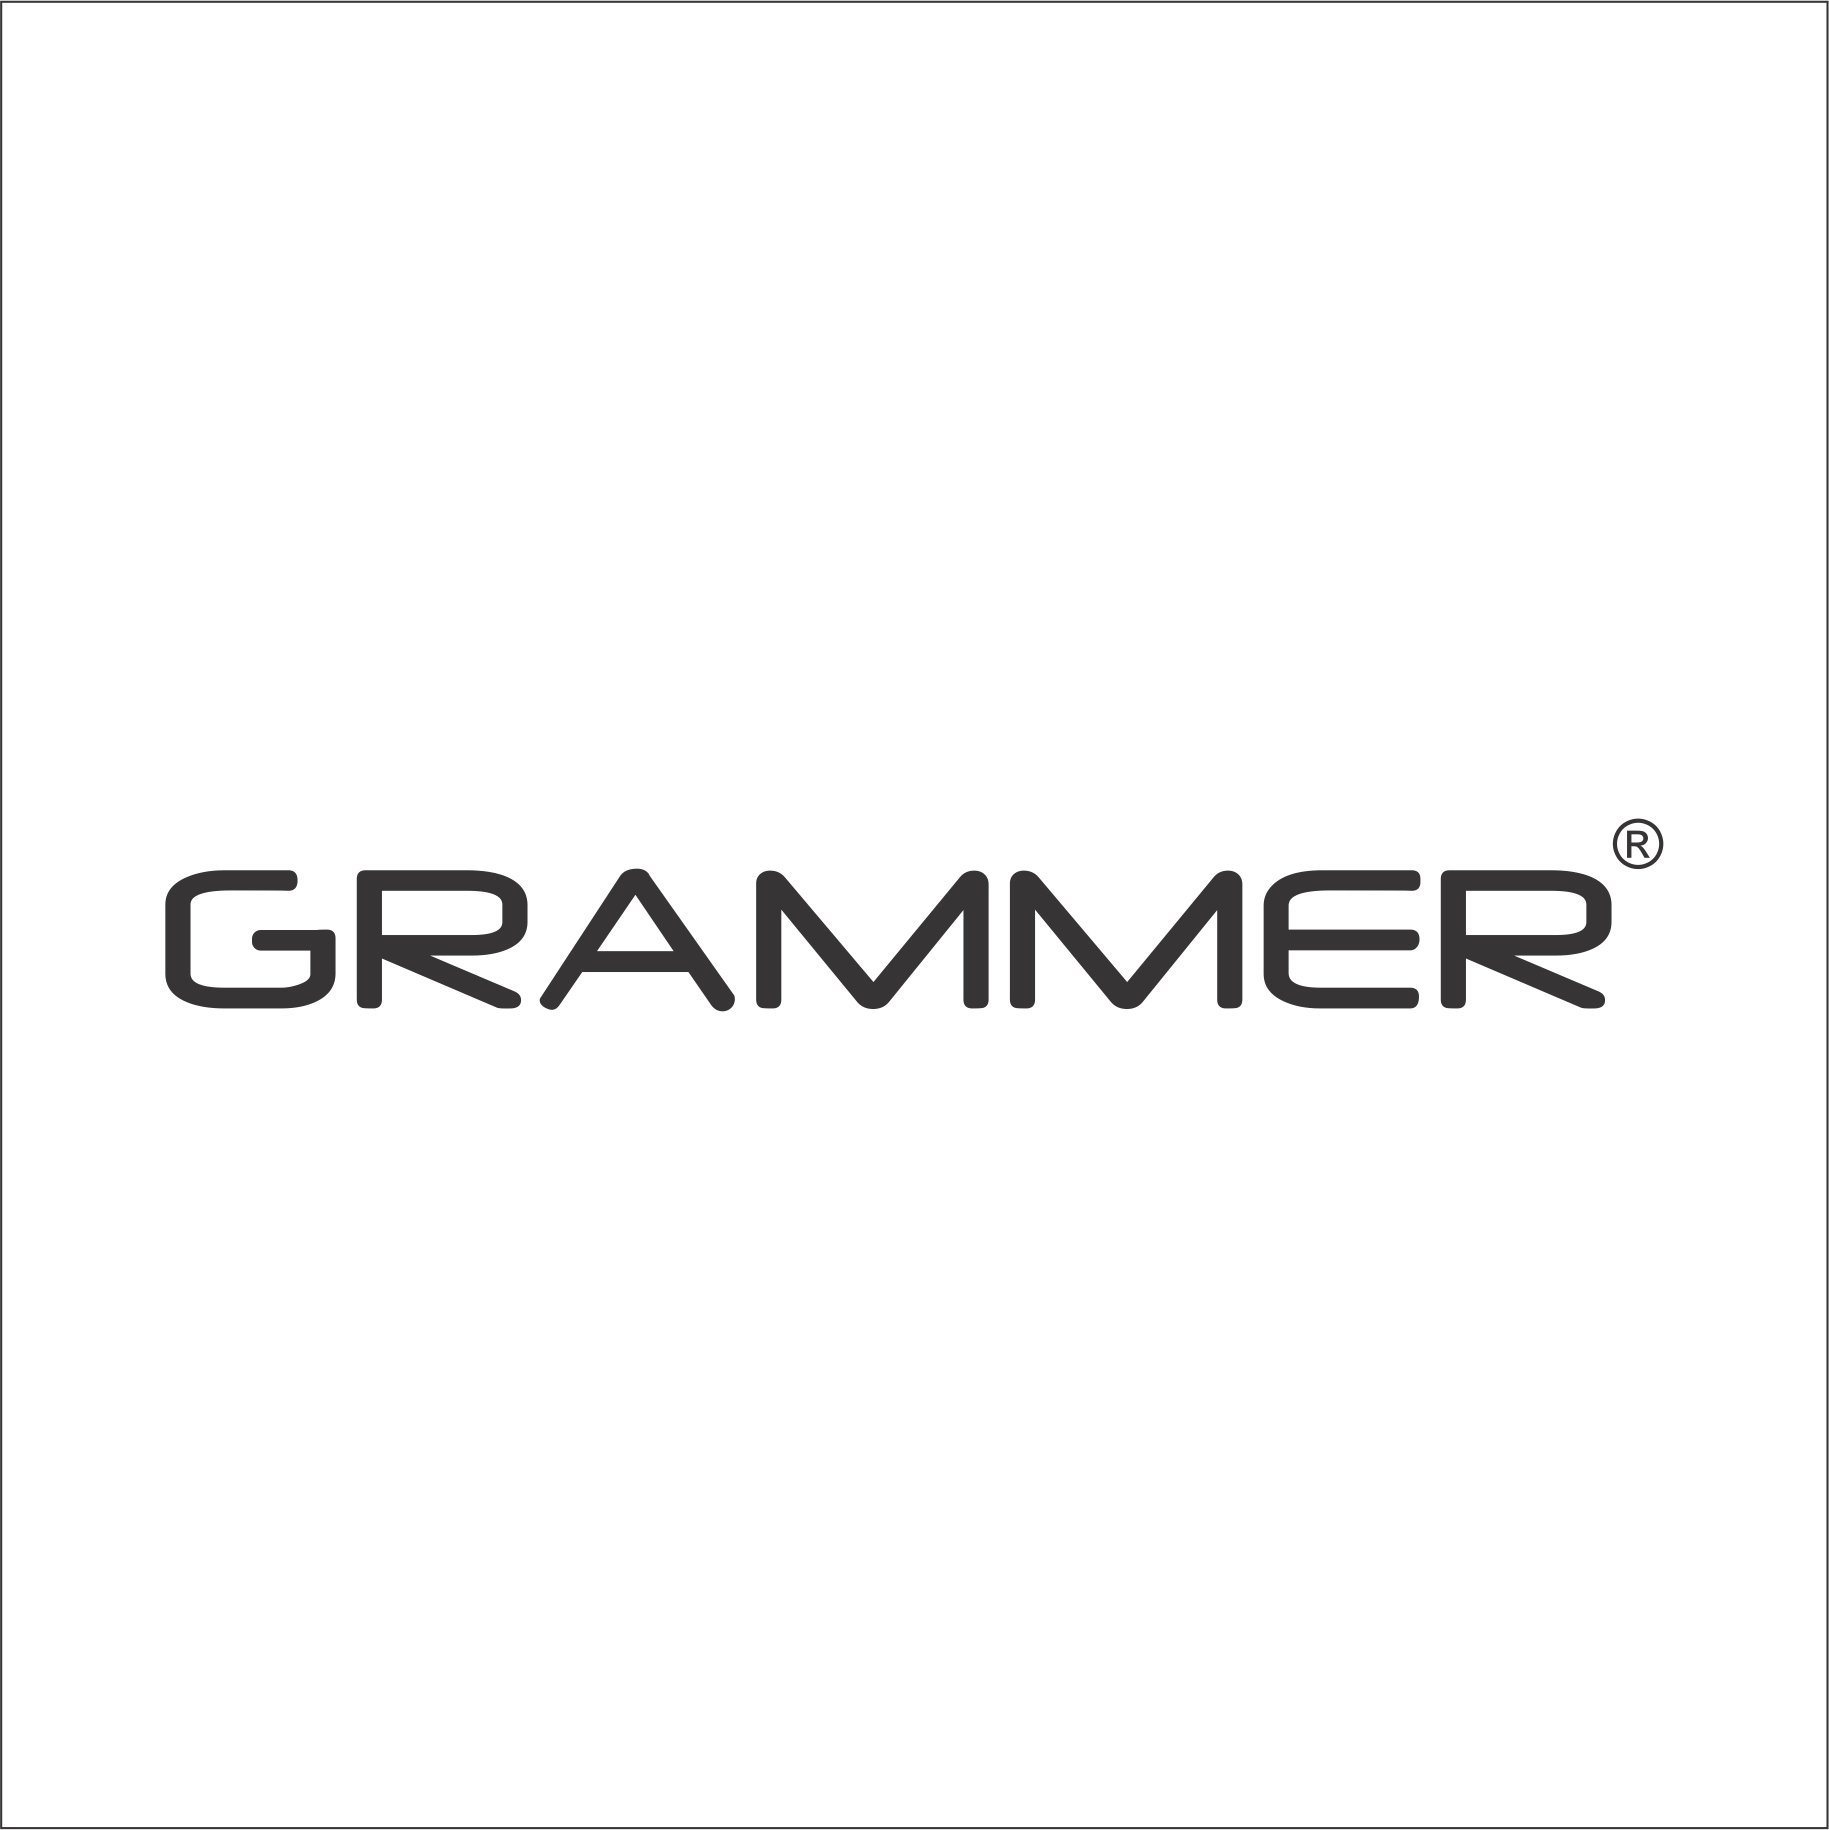 Grammer_Logo_06-10-2017